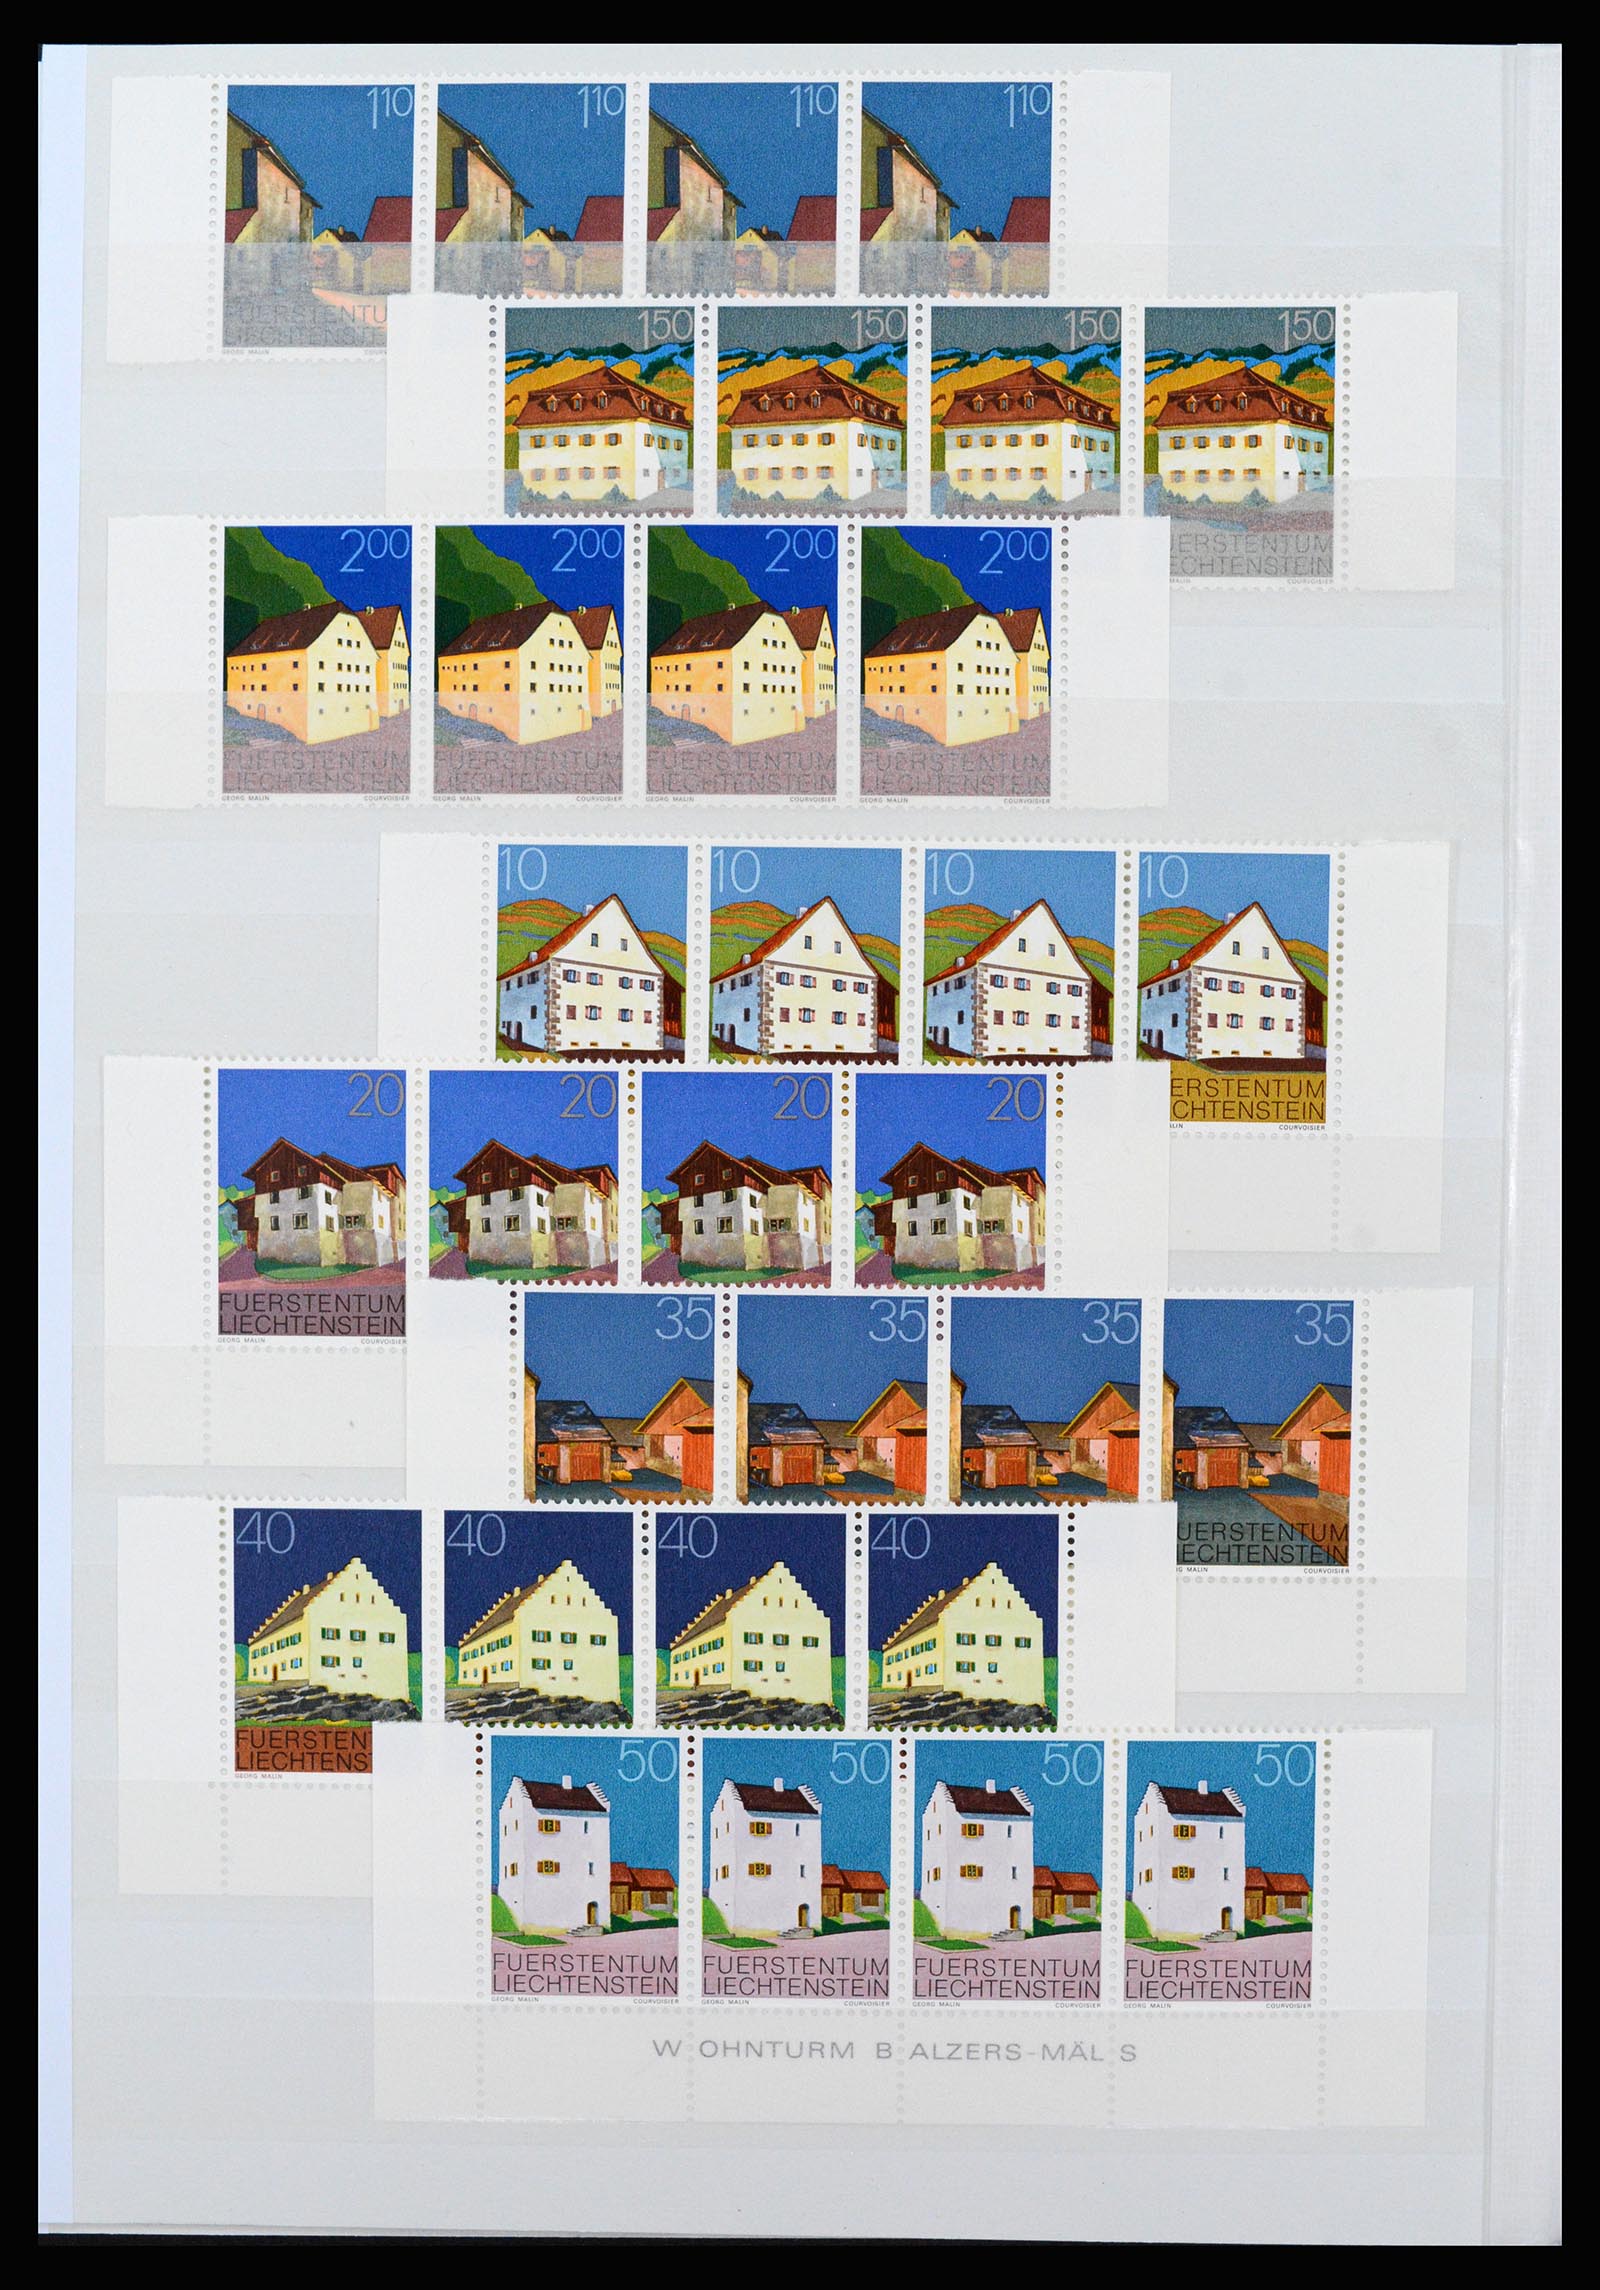 37261 052 - Stamp collection 37261 Liechtenstein 1961-1995.